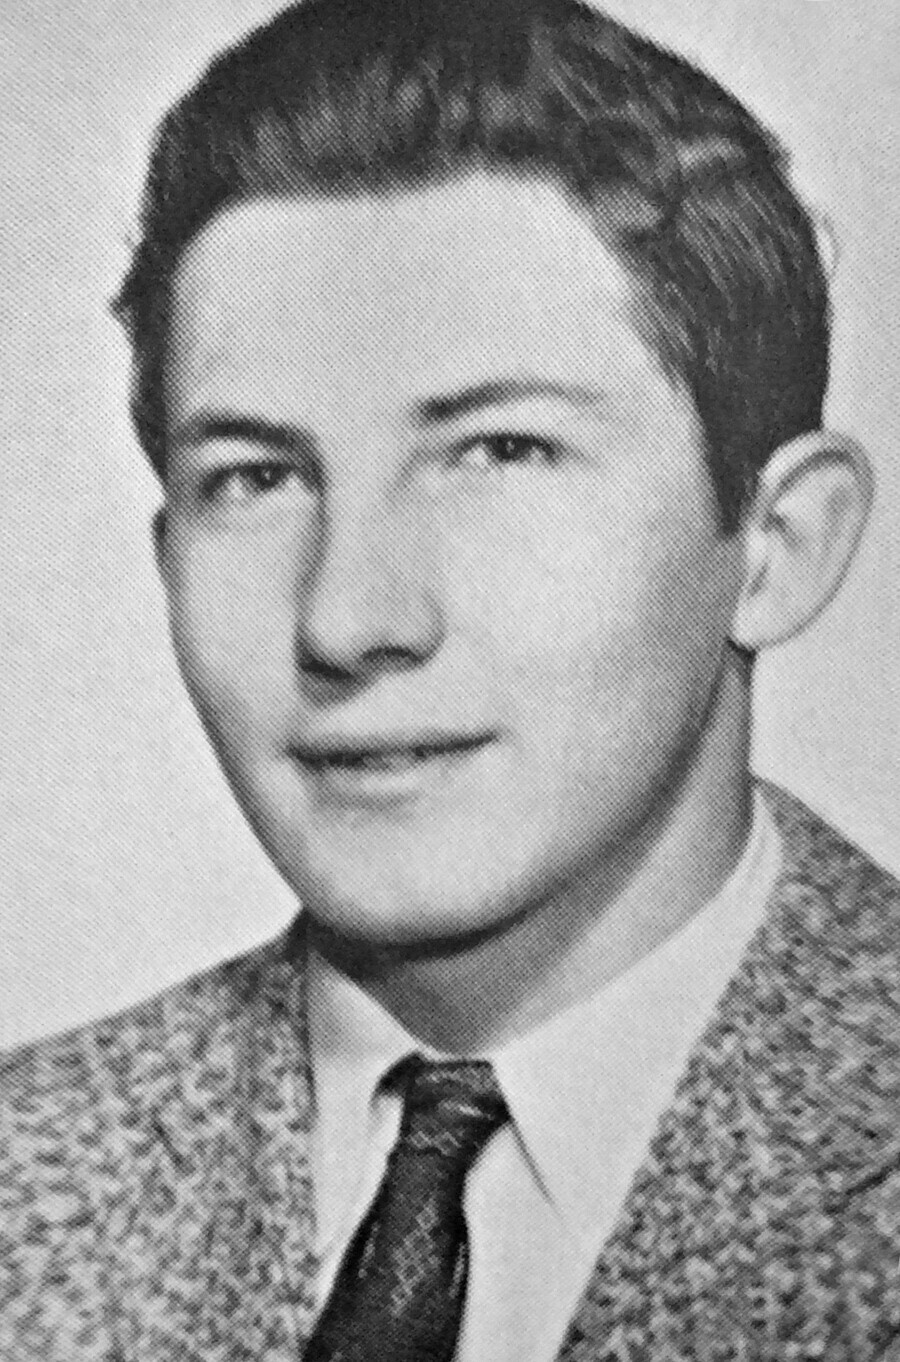 Um jovem Aldrich Ames no anuário da McLean High School de 1958.

